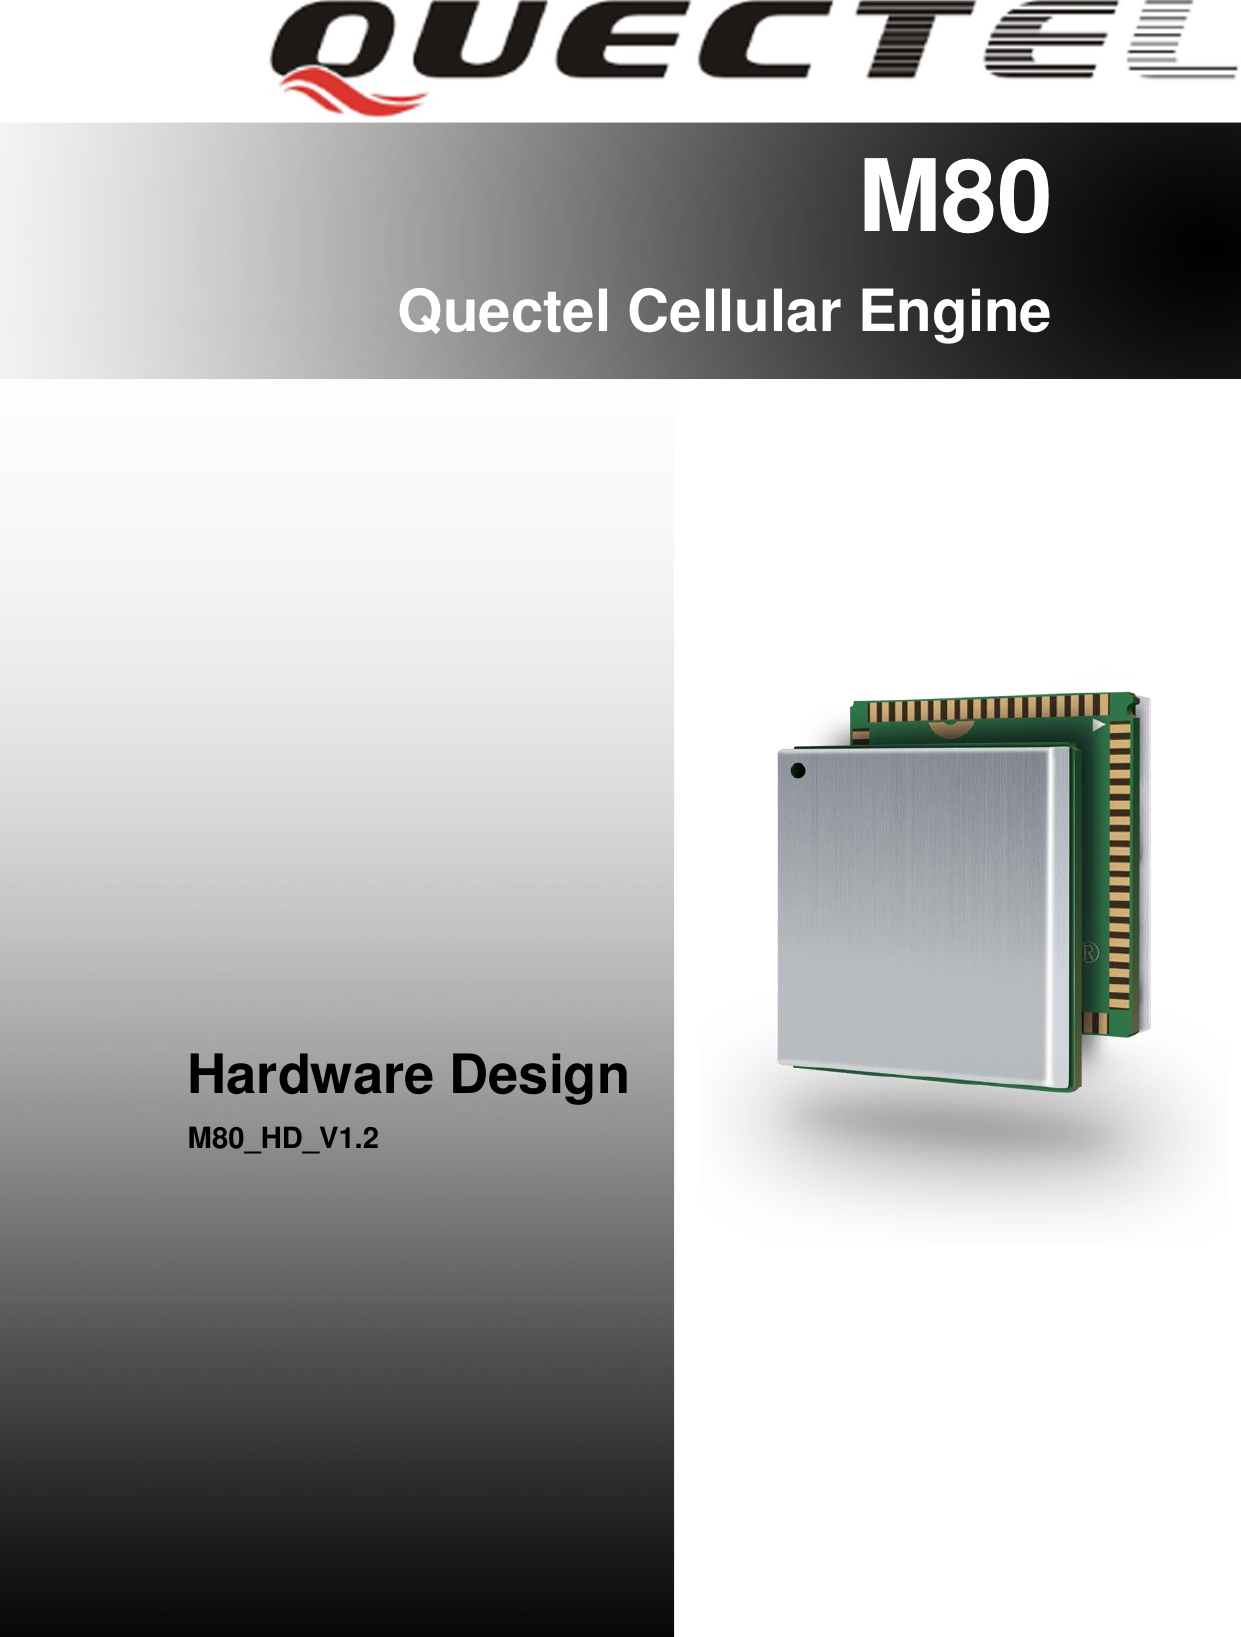 M80 Hardware Design                                                                                                         M80_HD_V1.2                                                                                                                                        - 1 -       M80 Quectel Cellular Engine                  Hardware Design M80_HD_V1.2         